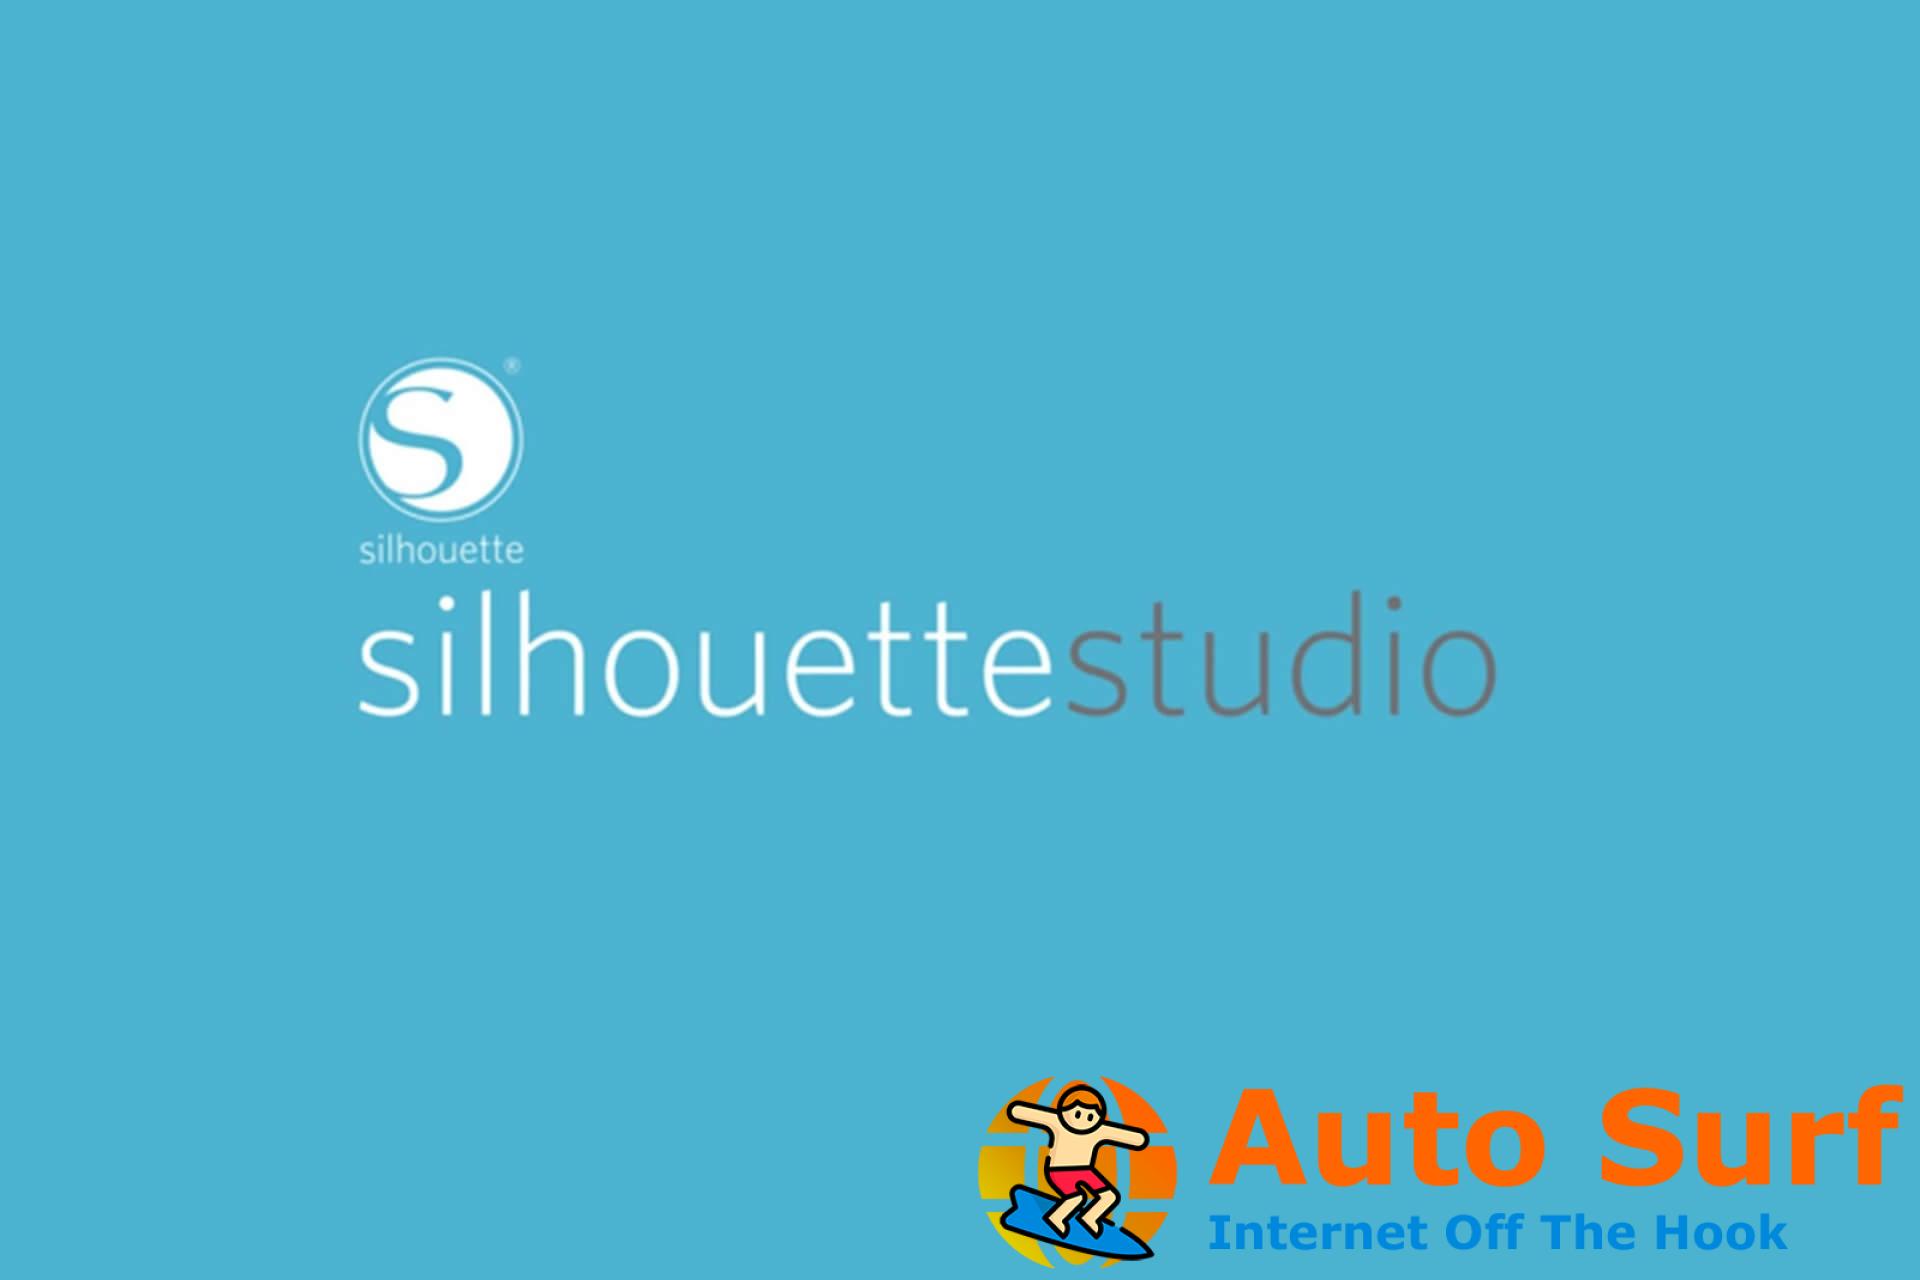 Silhouette Studio no se actualiza